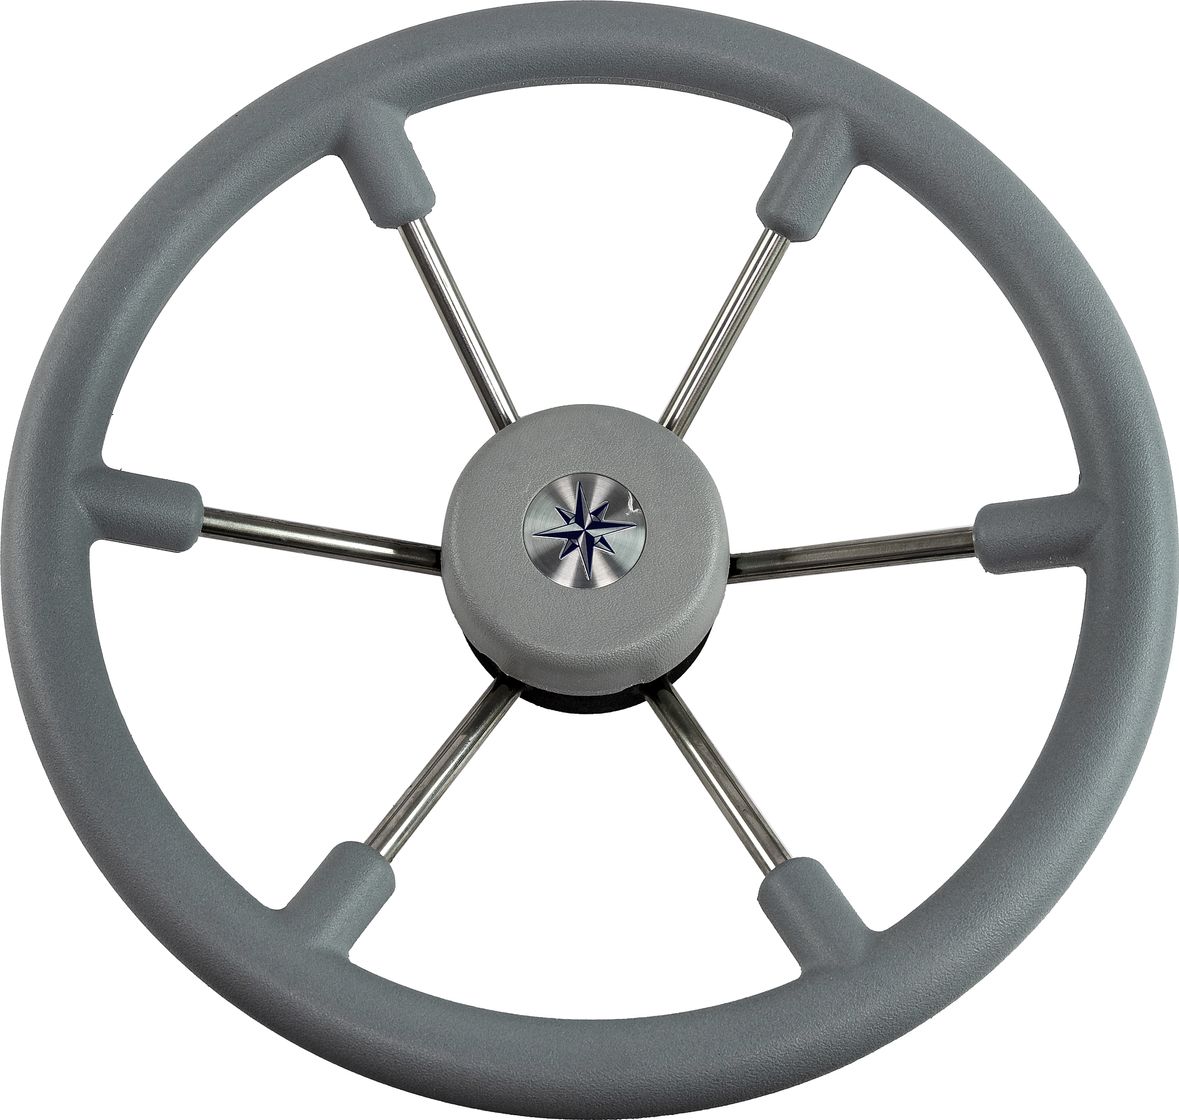 Рулевое колесо LEADER TANEGUM серый обод серебряные спицы д. 360 мм VN7360-03 заглушка декоративная для рулевых колес leader tanegum серая vn00010 03